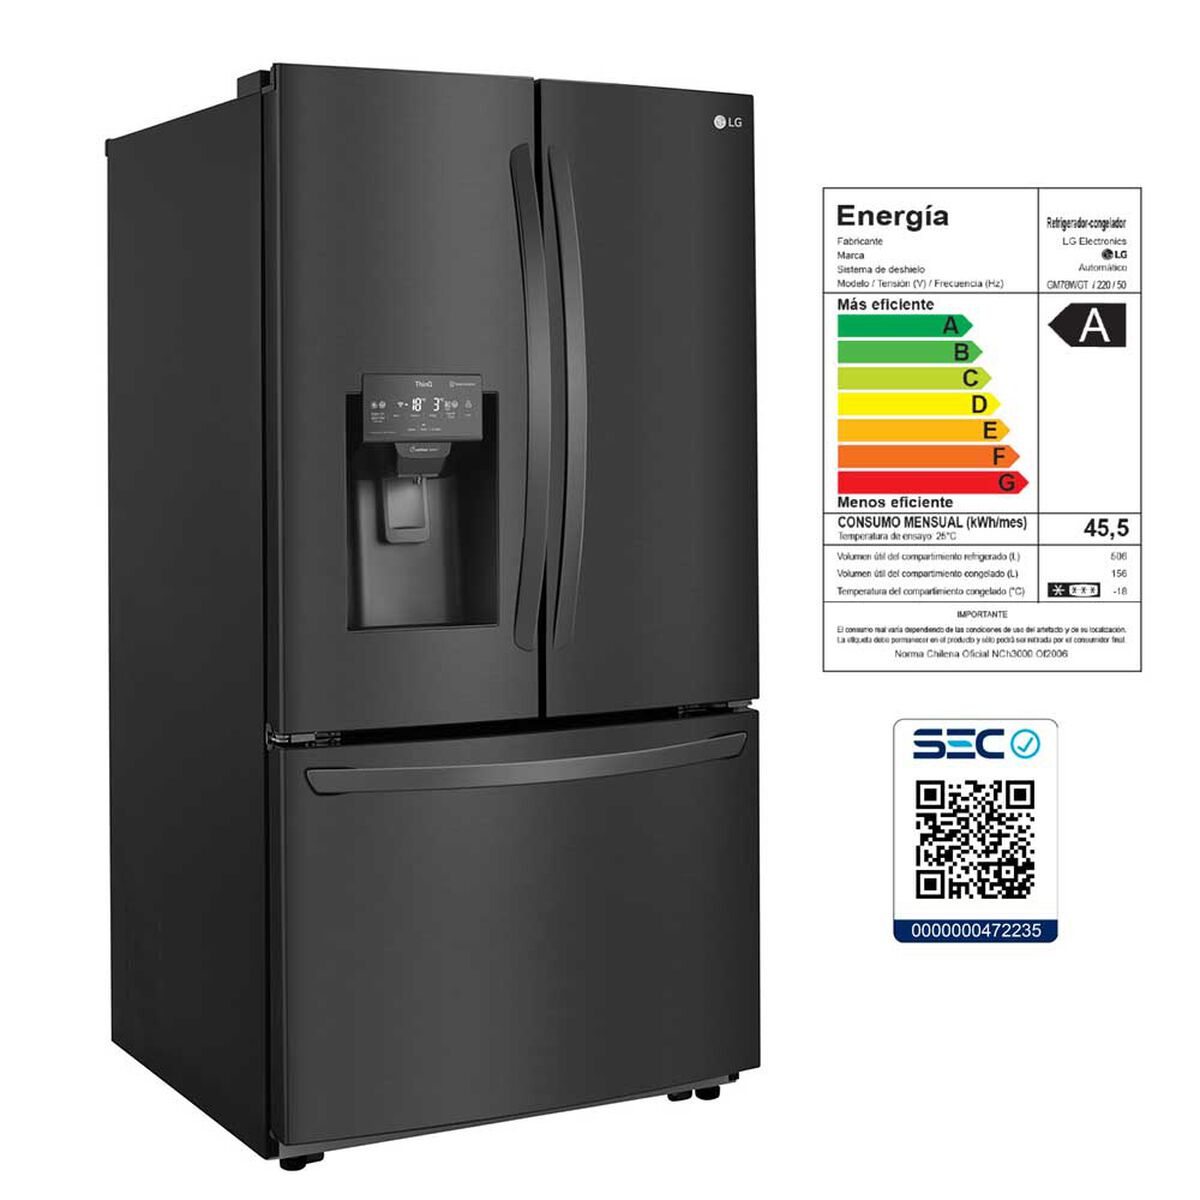 Refrigerador Side by Side LG GM78WGT 662 lts